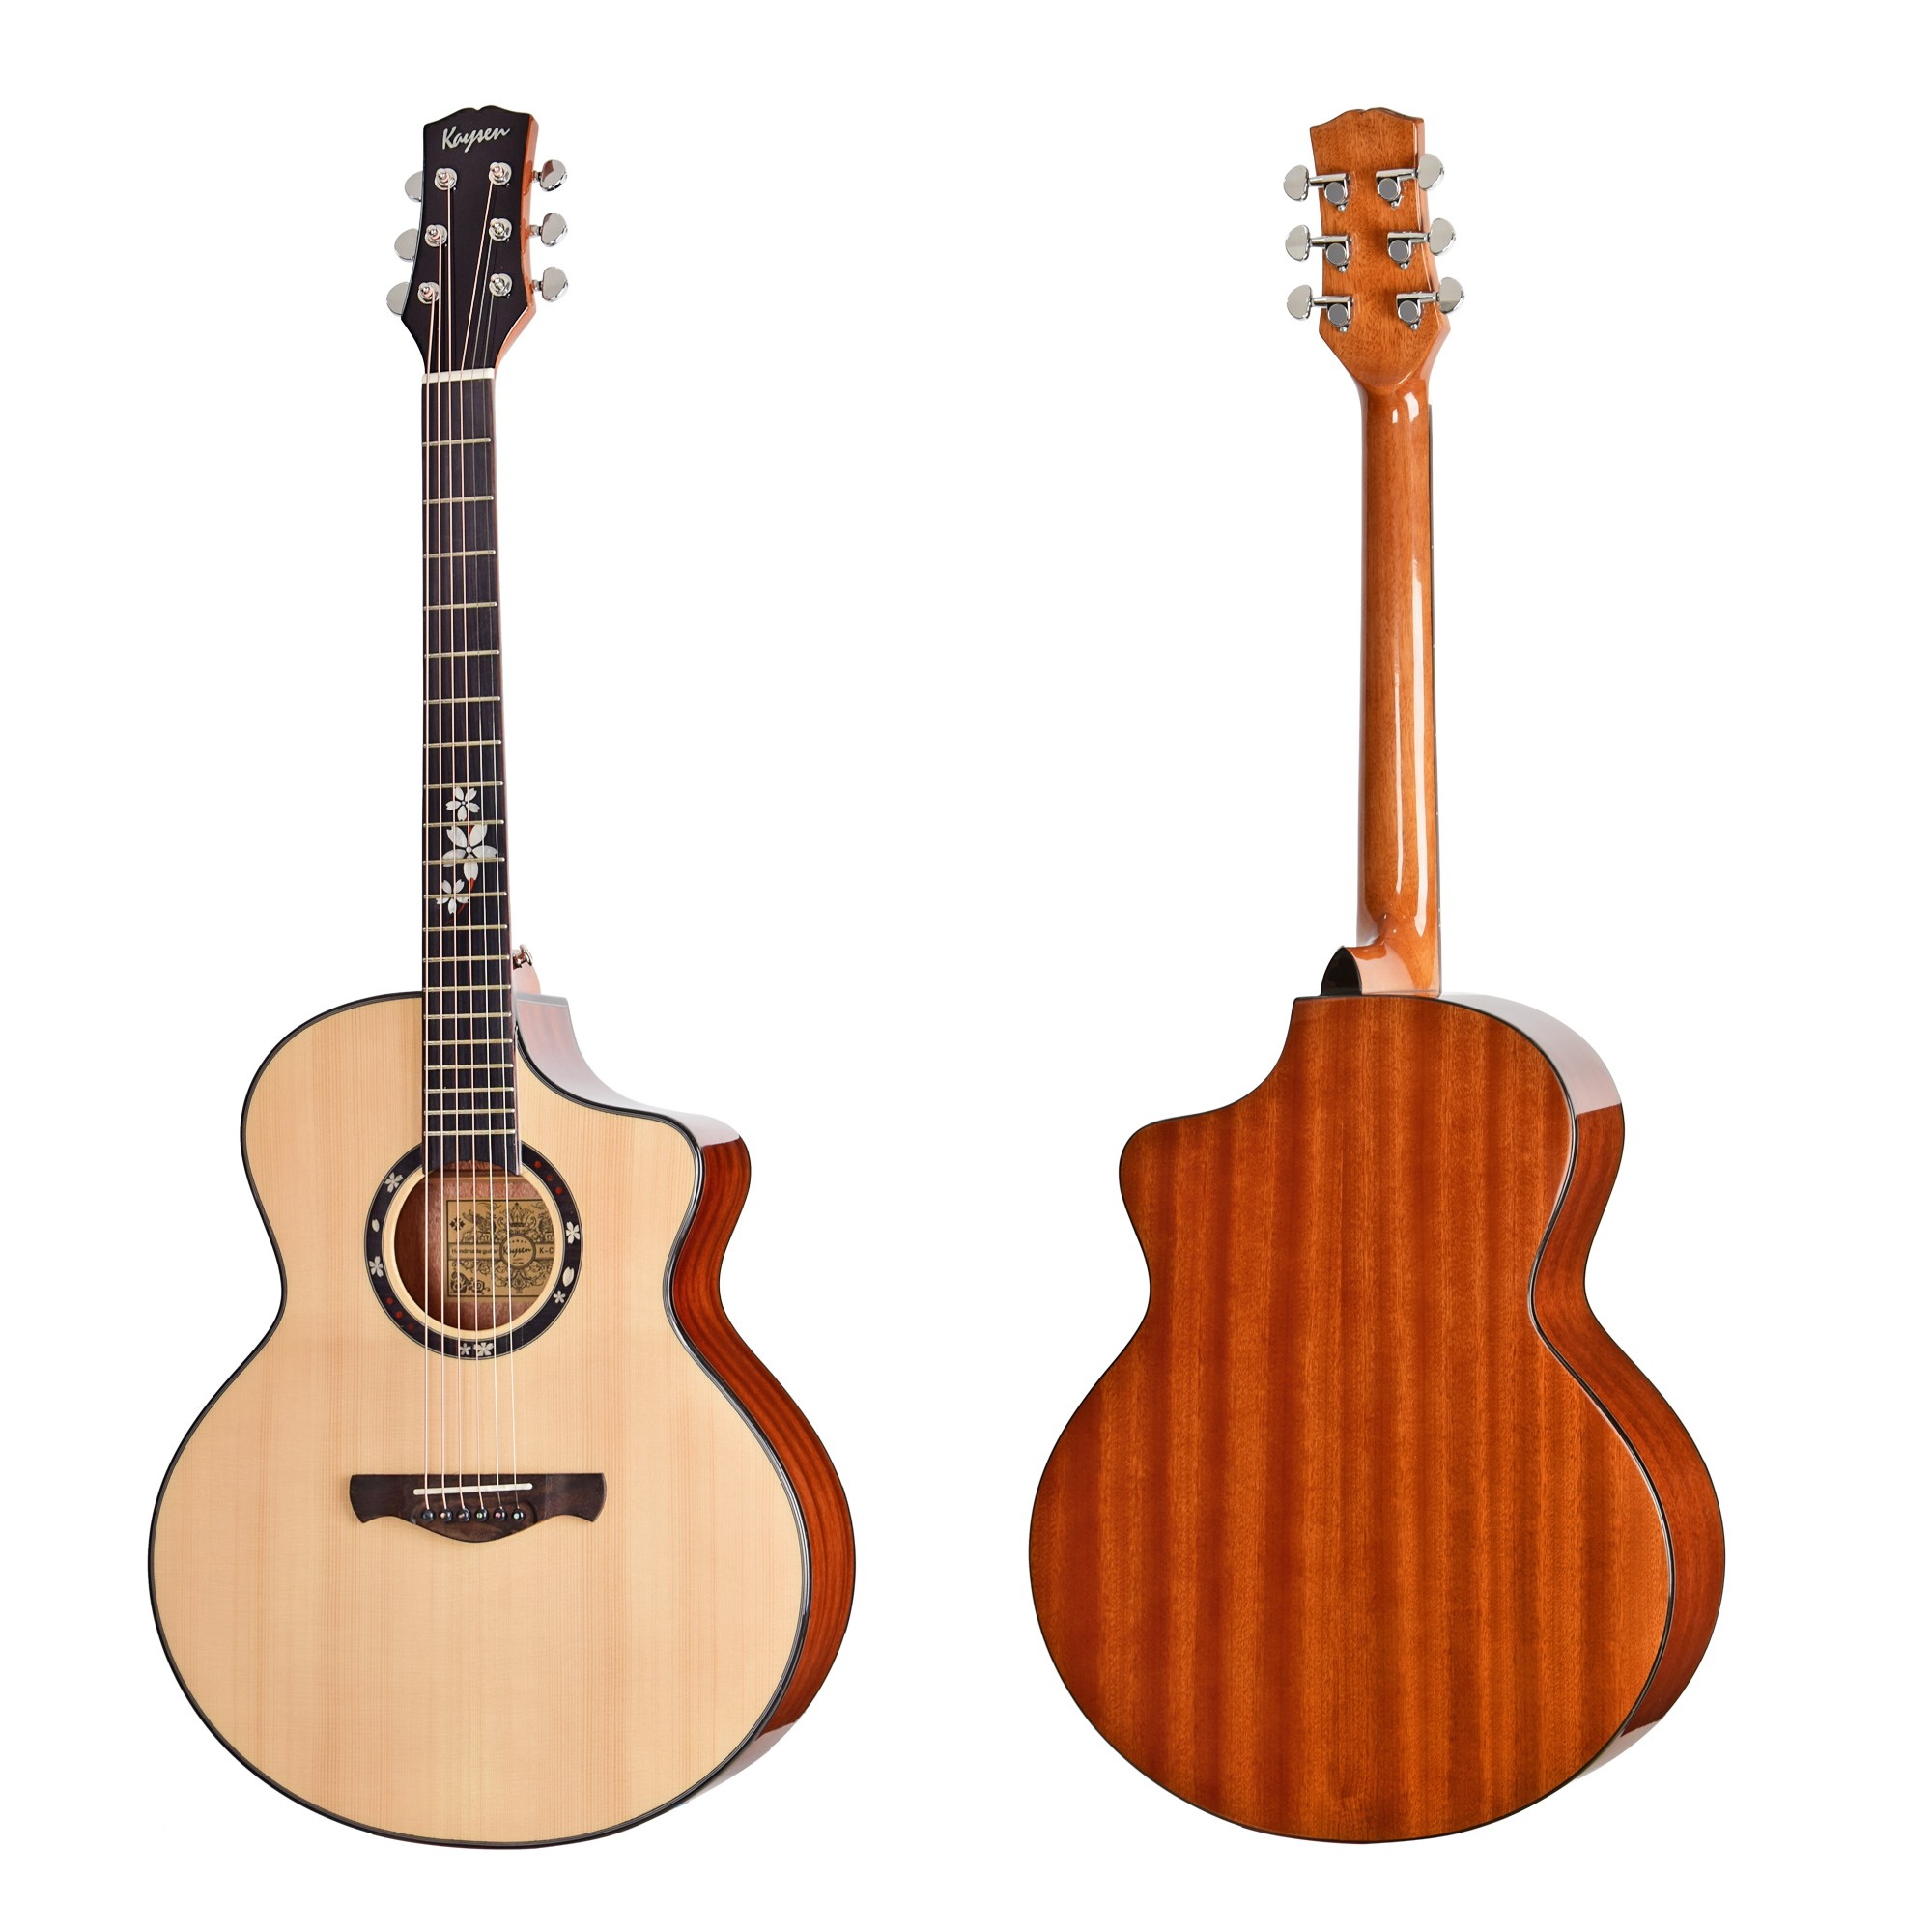 K-C17B OEM acoustic guitar